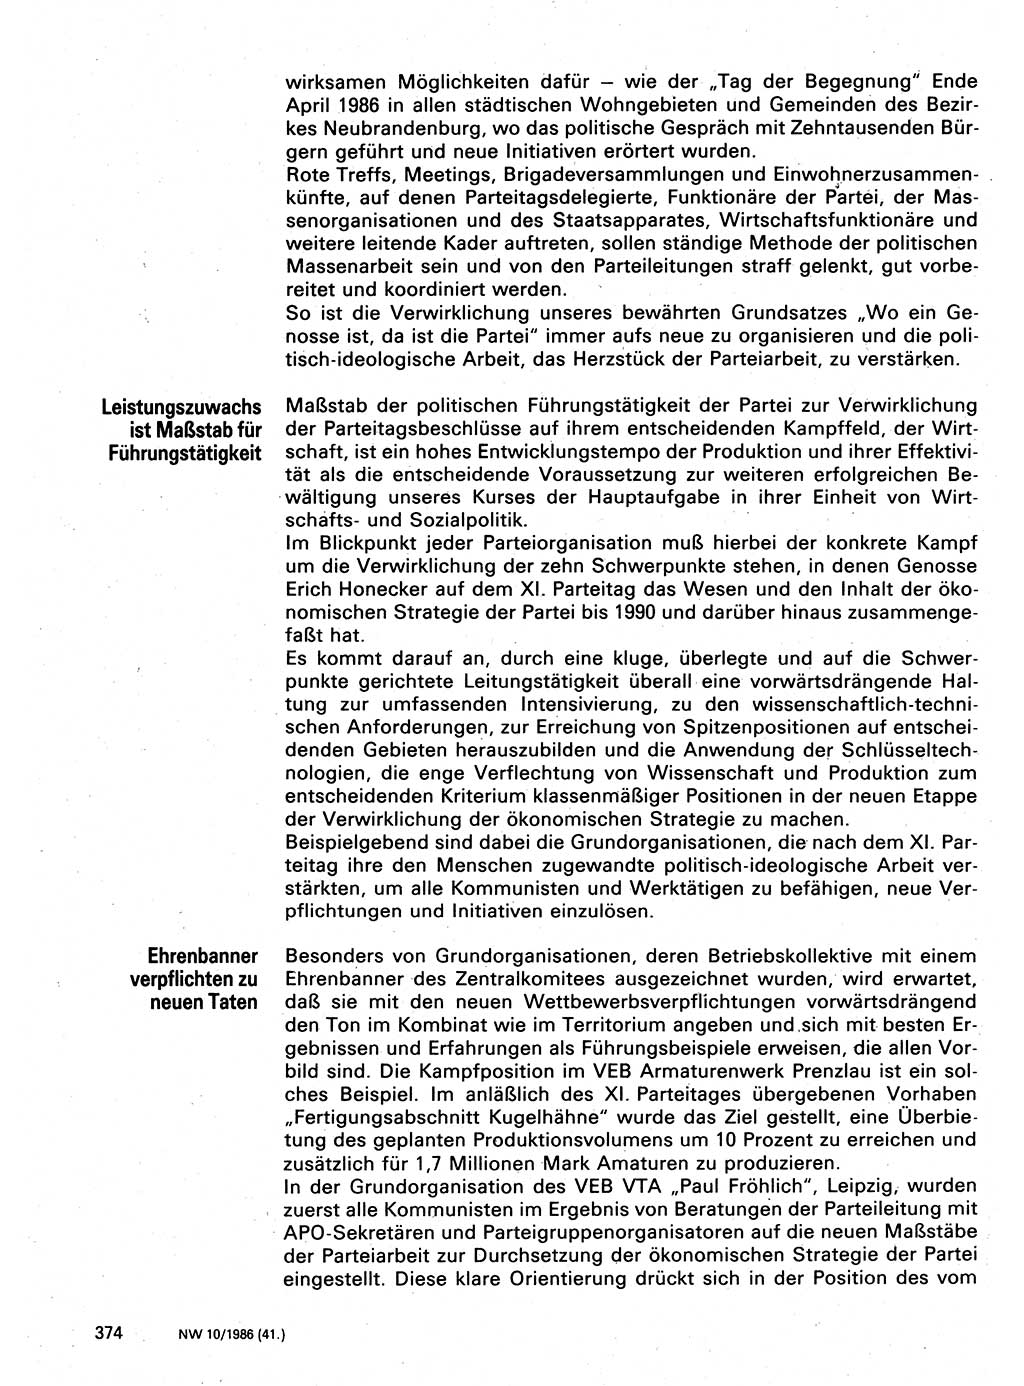 Neuer Weg (NW), Organ des Zentralkomitees (ZK) der SED (Sozialistische Einheitspartei Deutschlands) für Fragen des Parteilebens, 41. Jahrgang [Deutsche Demokratische Republik (DDR)] 1986, Seite 374 (NW ZK SED DDR 1986, S. 374)